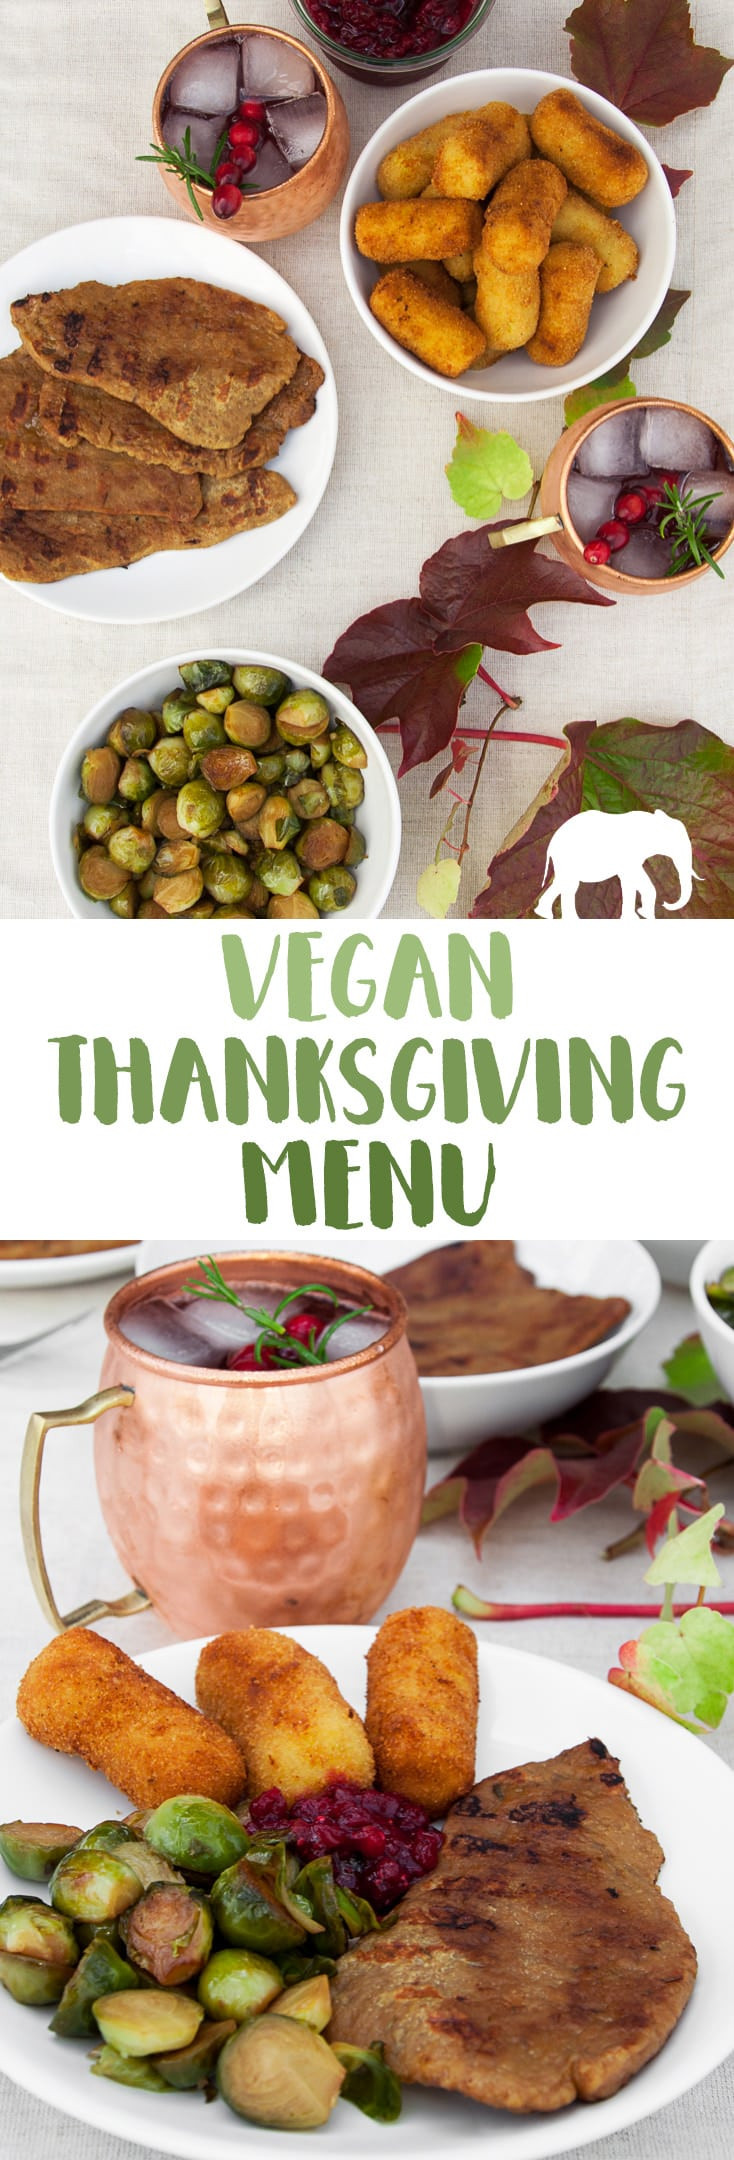 Vegan Thanksgiving Menu
 Vegan Thanksgiving Menu Recipes